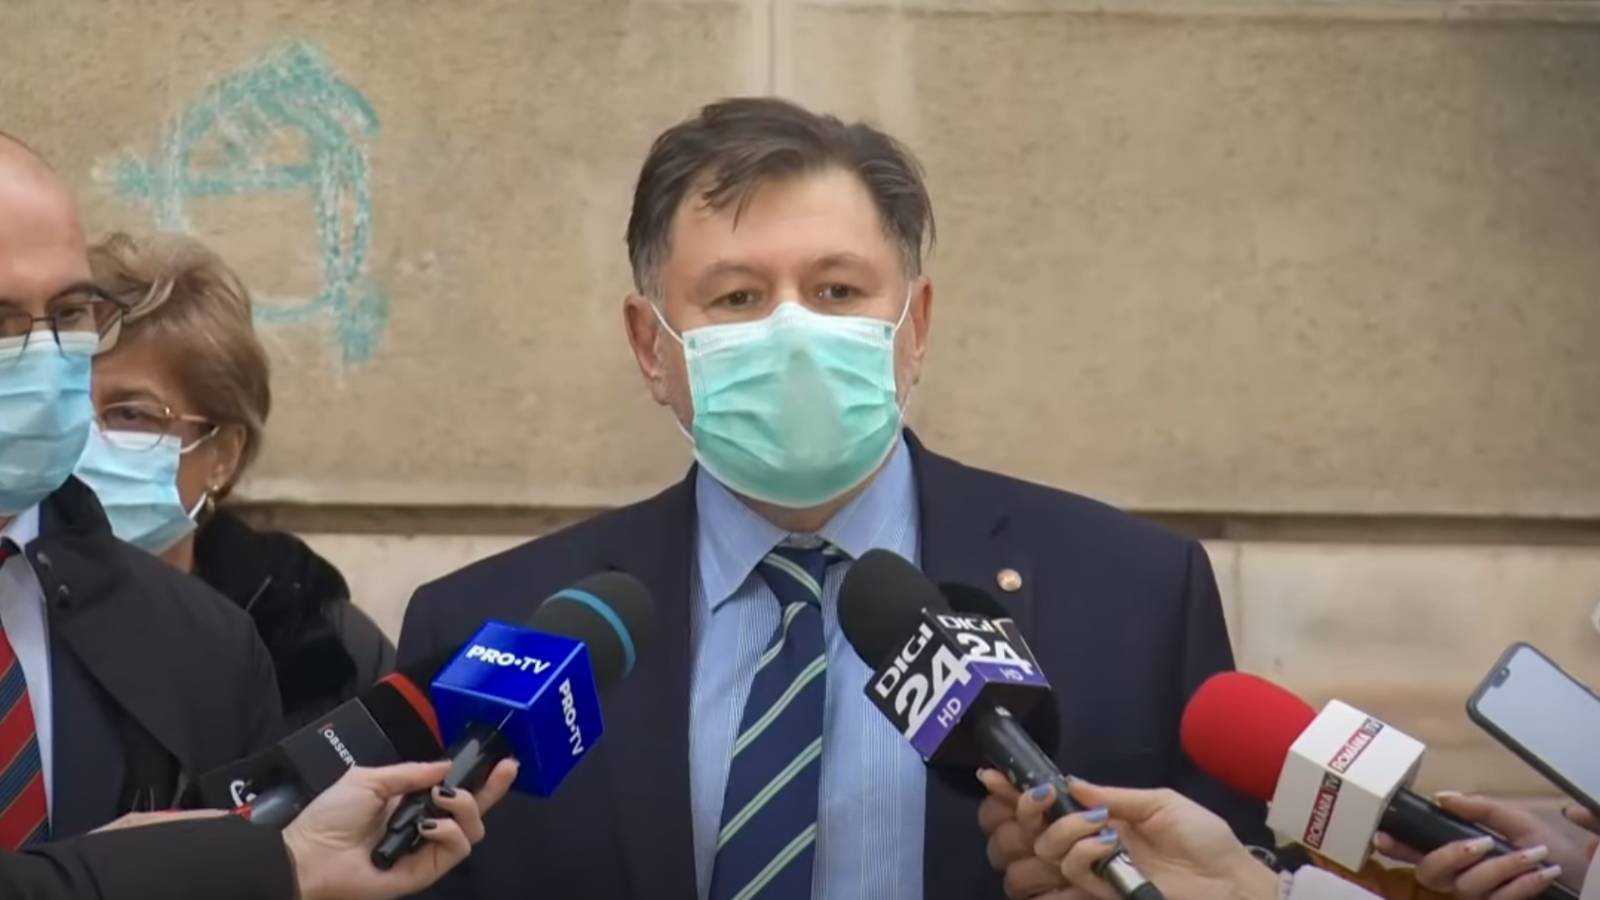 Alexandru Rafila verhoogt nieuwe gevallen van COVID-19 Roemenië